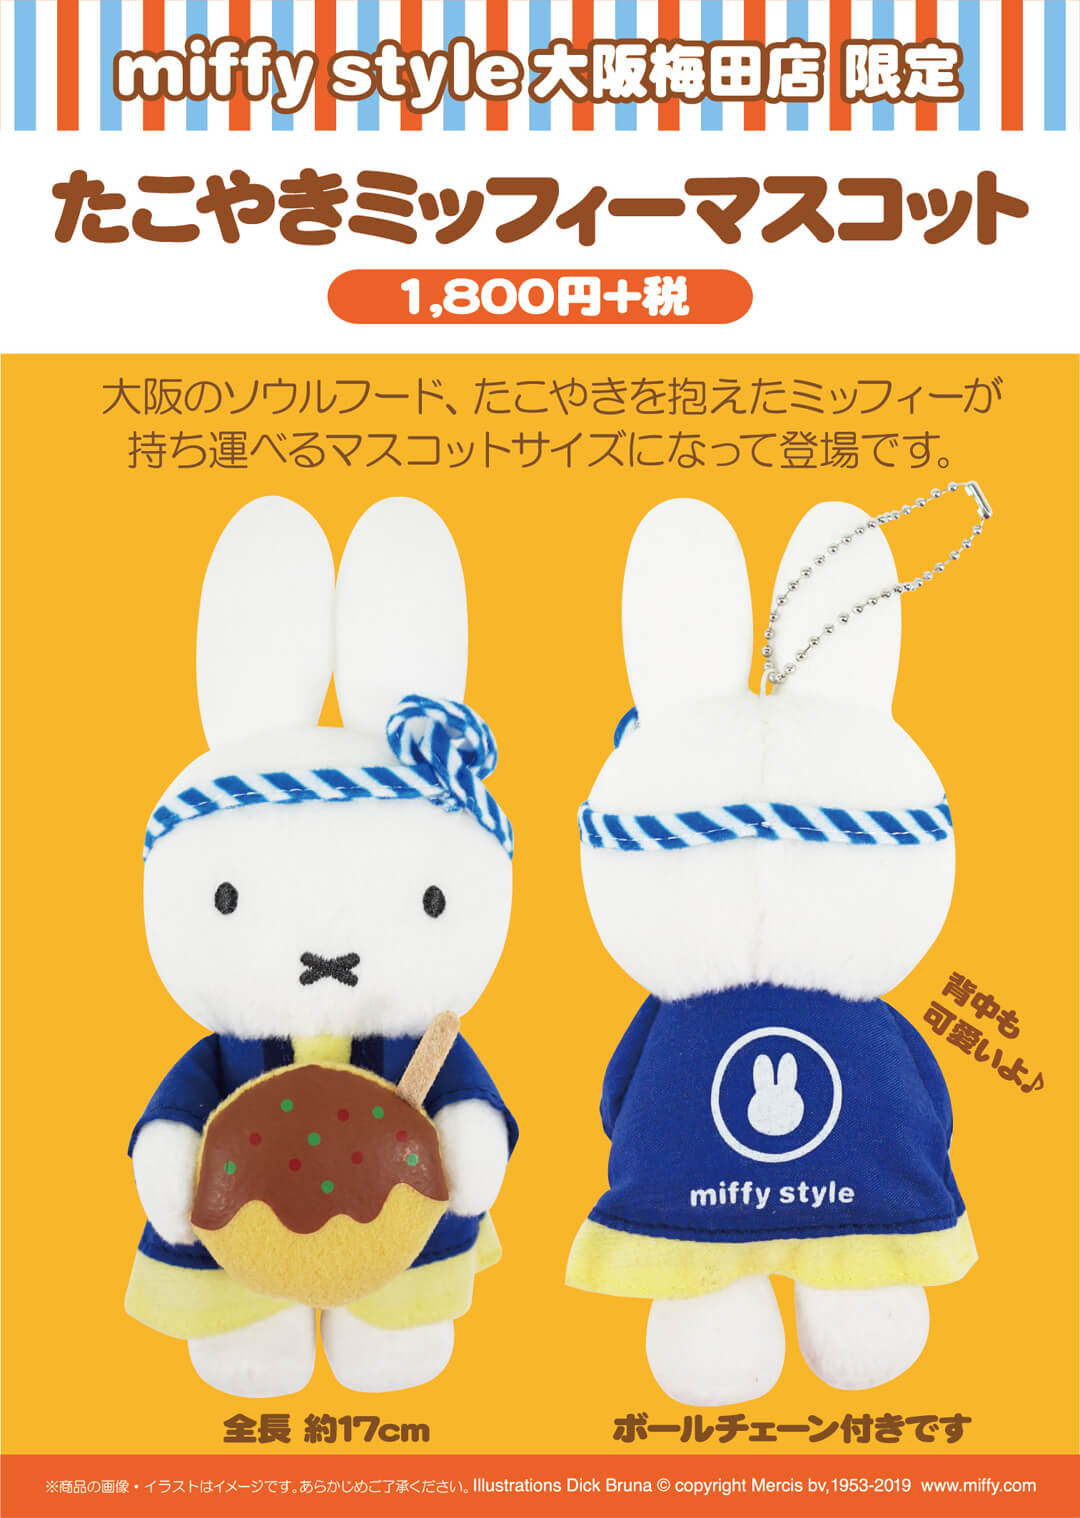 8月3日（土）発売予定!miffy style 大阪梅田限定 たこ焼きミッフィー ...